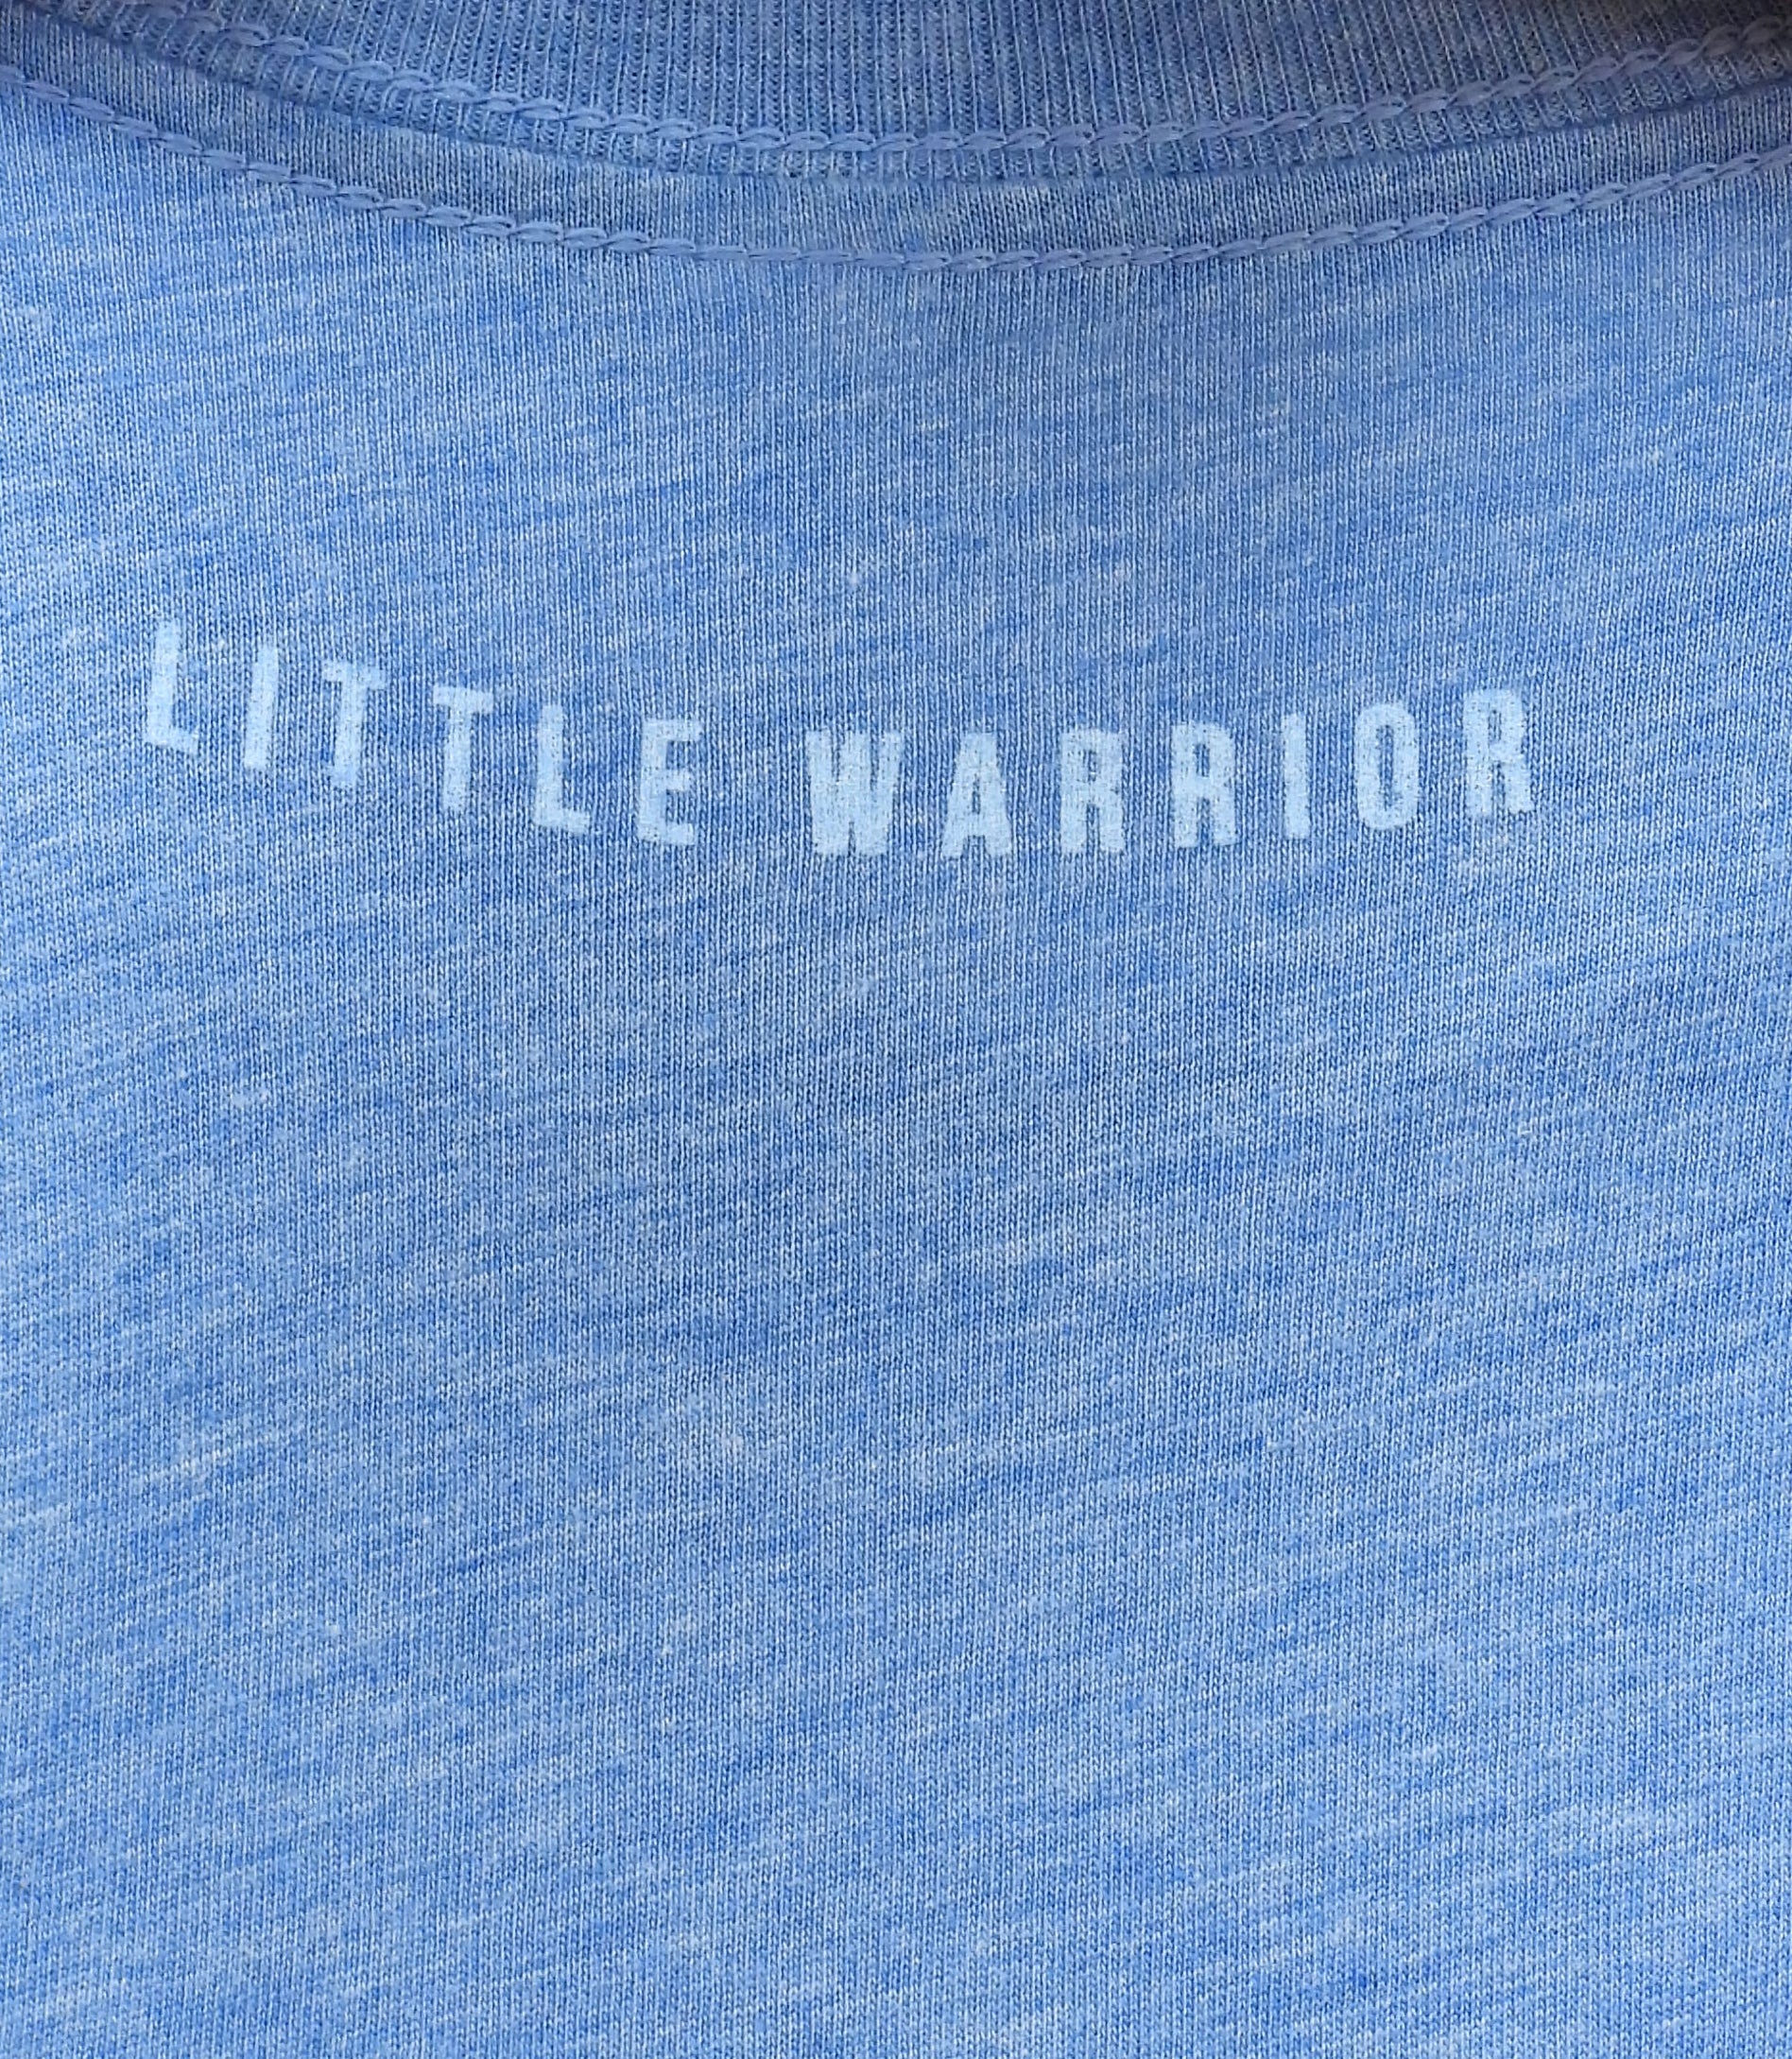 Kid's Be a Warrior, Not a Worrier Tee